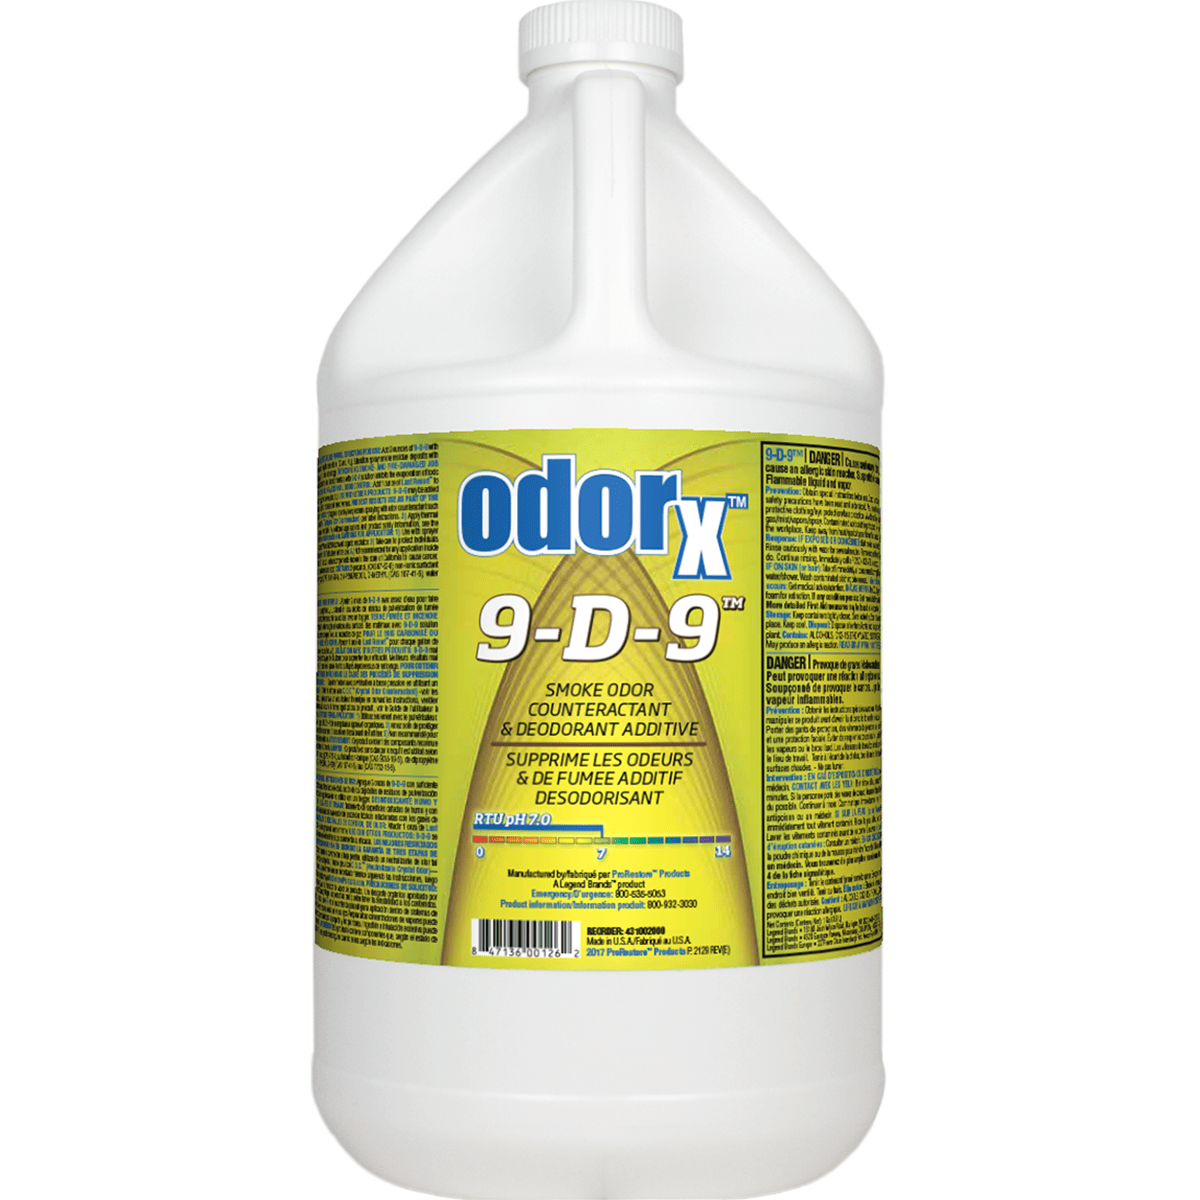 ProRestore ODORx 9-D-9 - Case of 4